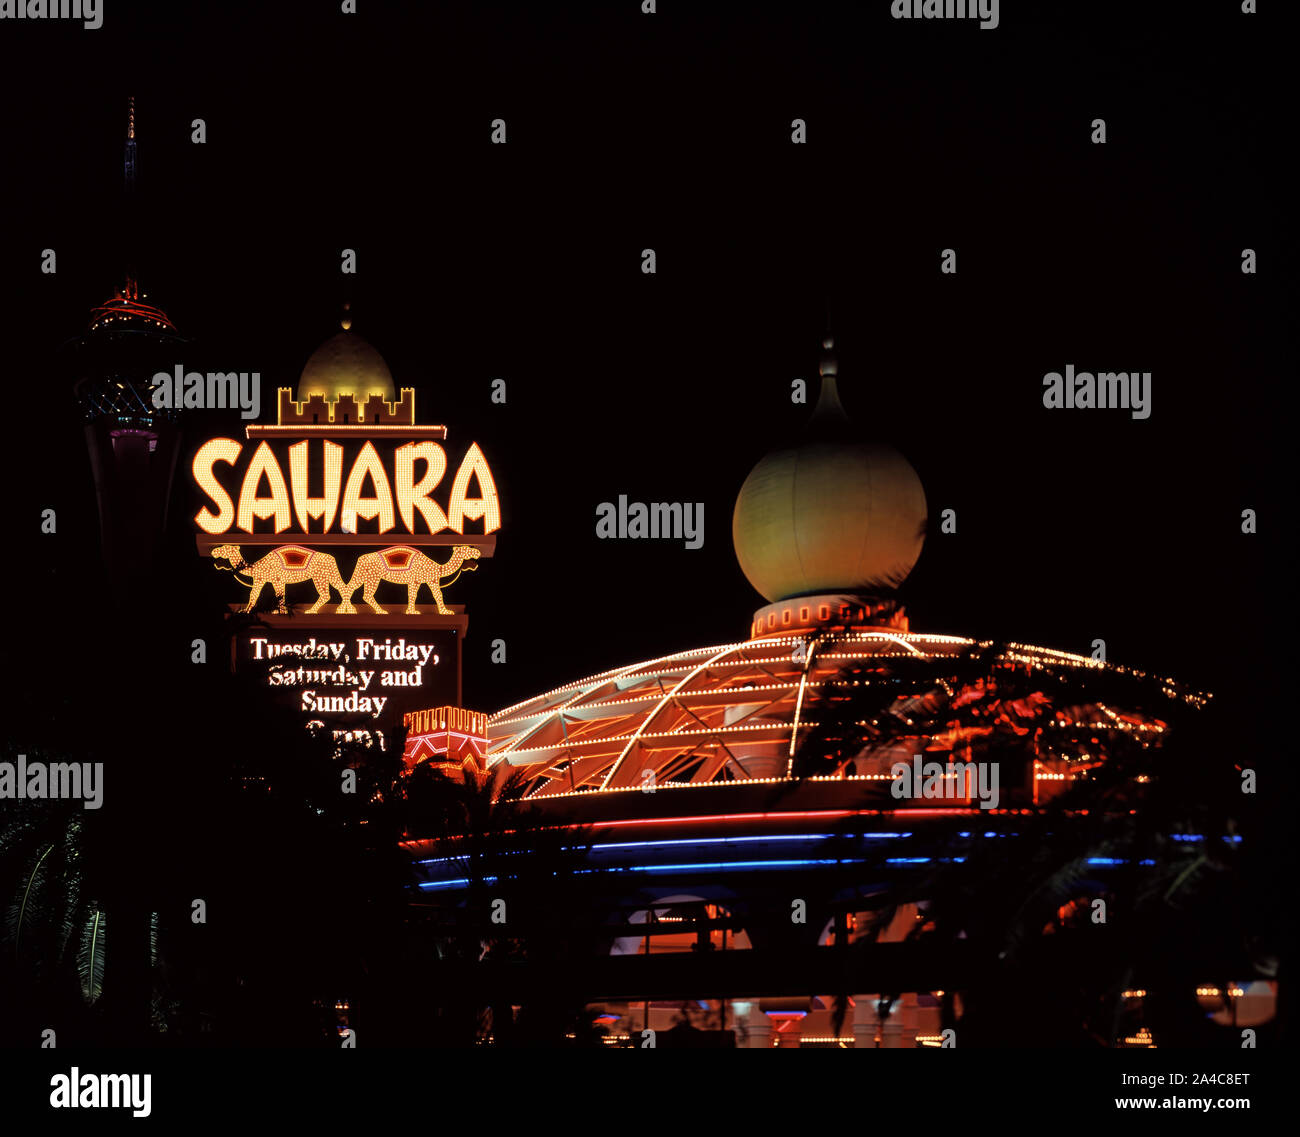 Le Sahara Hotel and Casino a remplacé l'ancienne Bingo Club à Las Vegas sur un endroit de sorte qu'il n'y a que les avions vides Banque D'Images